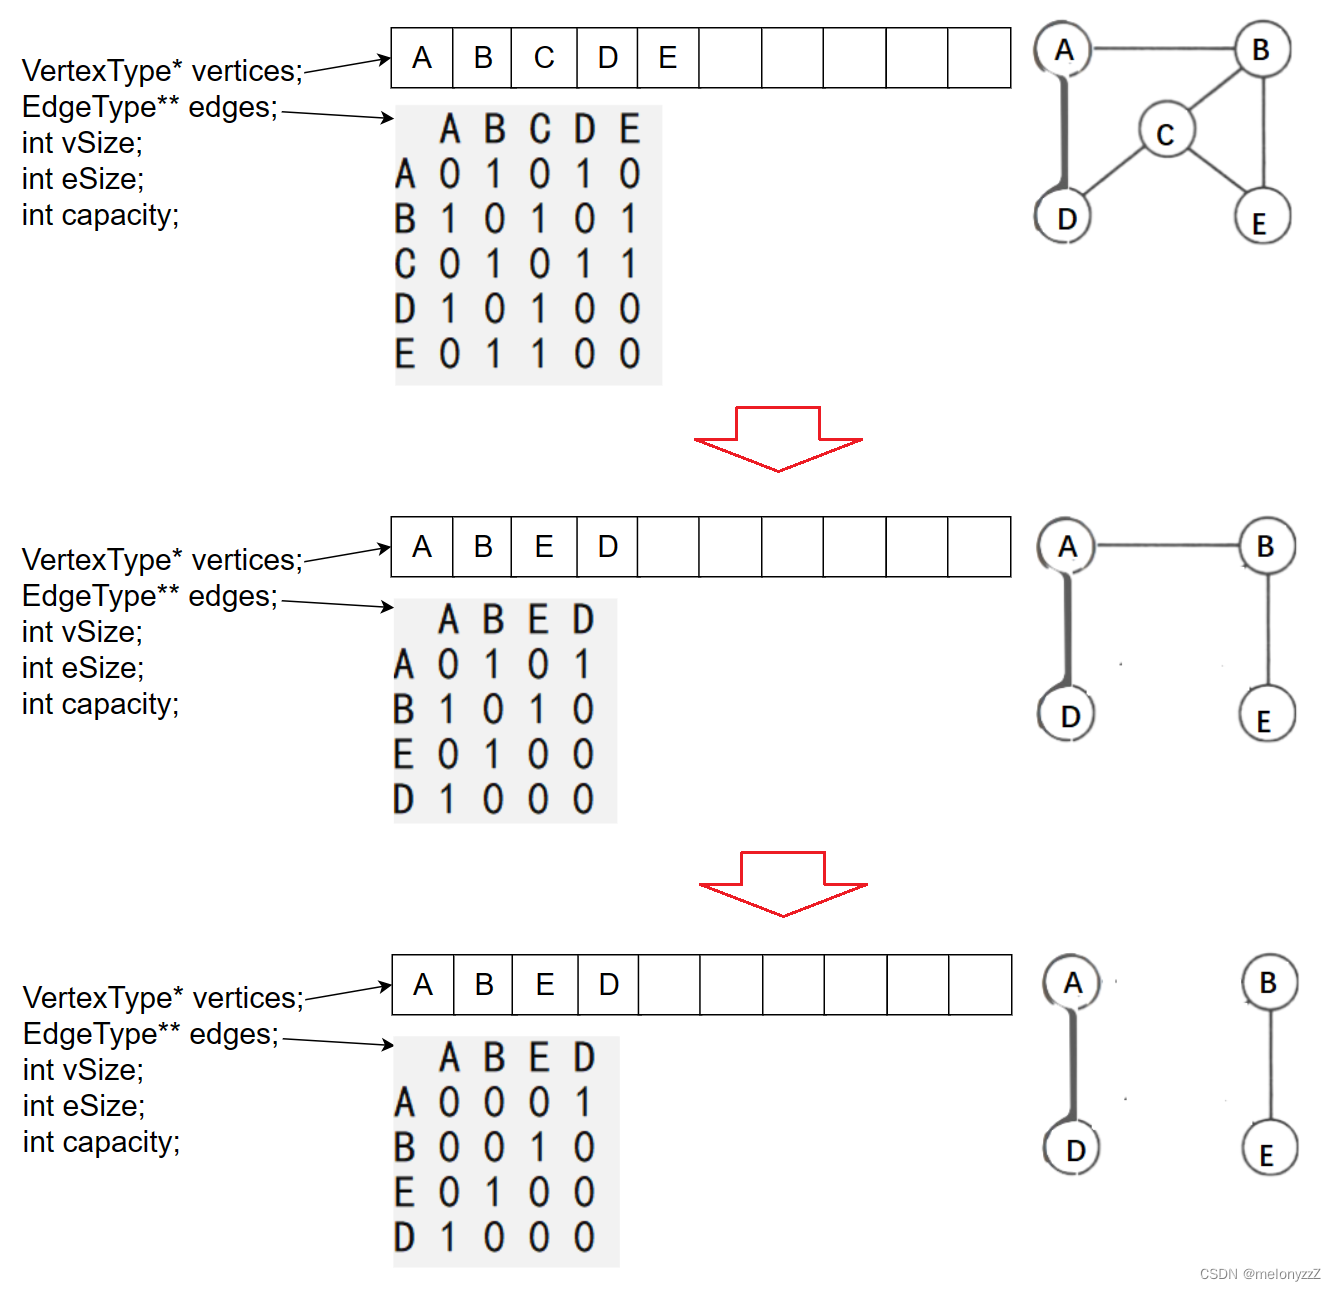 【数据结构第 6 章 ②】- 图的存储结构（详解邻接矩阵）- 用 C 语言实现